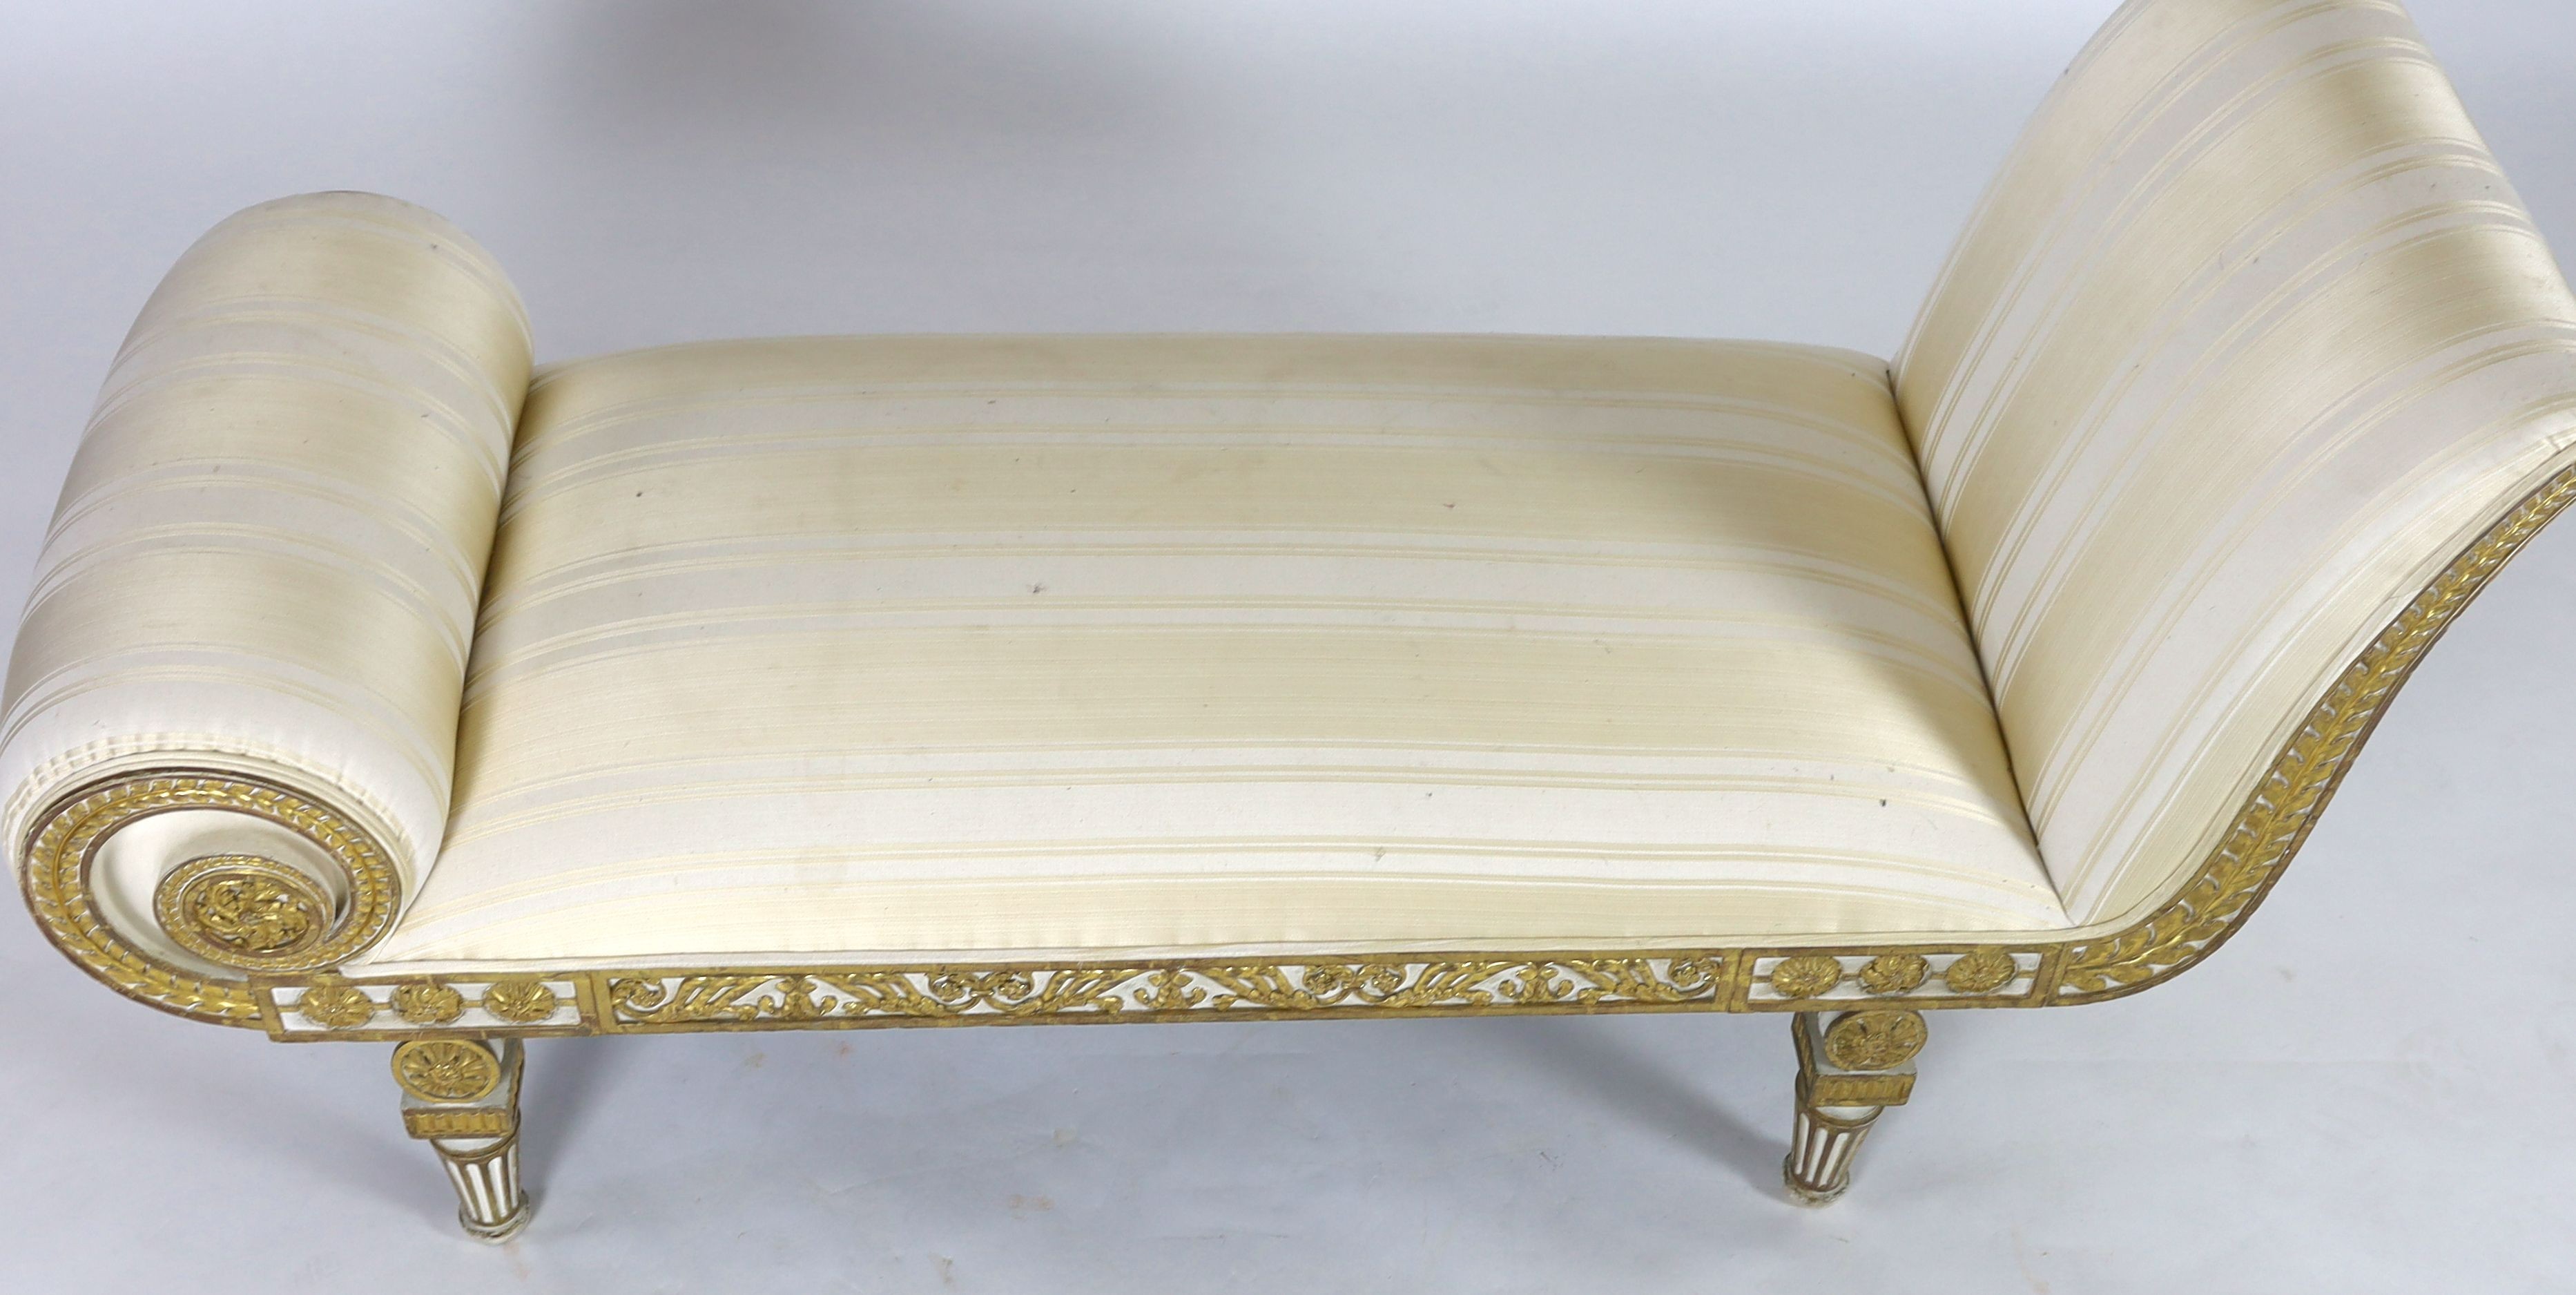 A Regency white painted and parcel gilt chaise longue, L.166cm W.63cm H.84cm